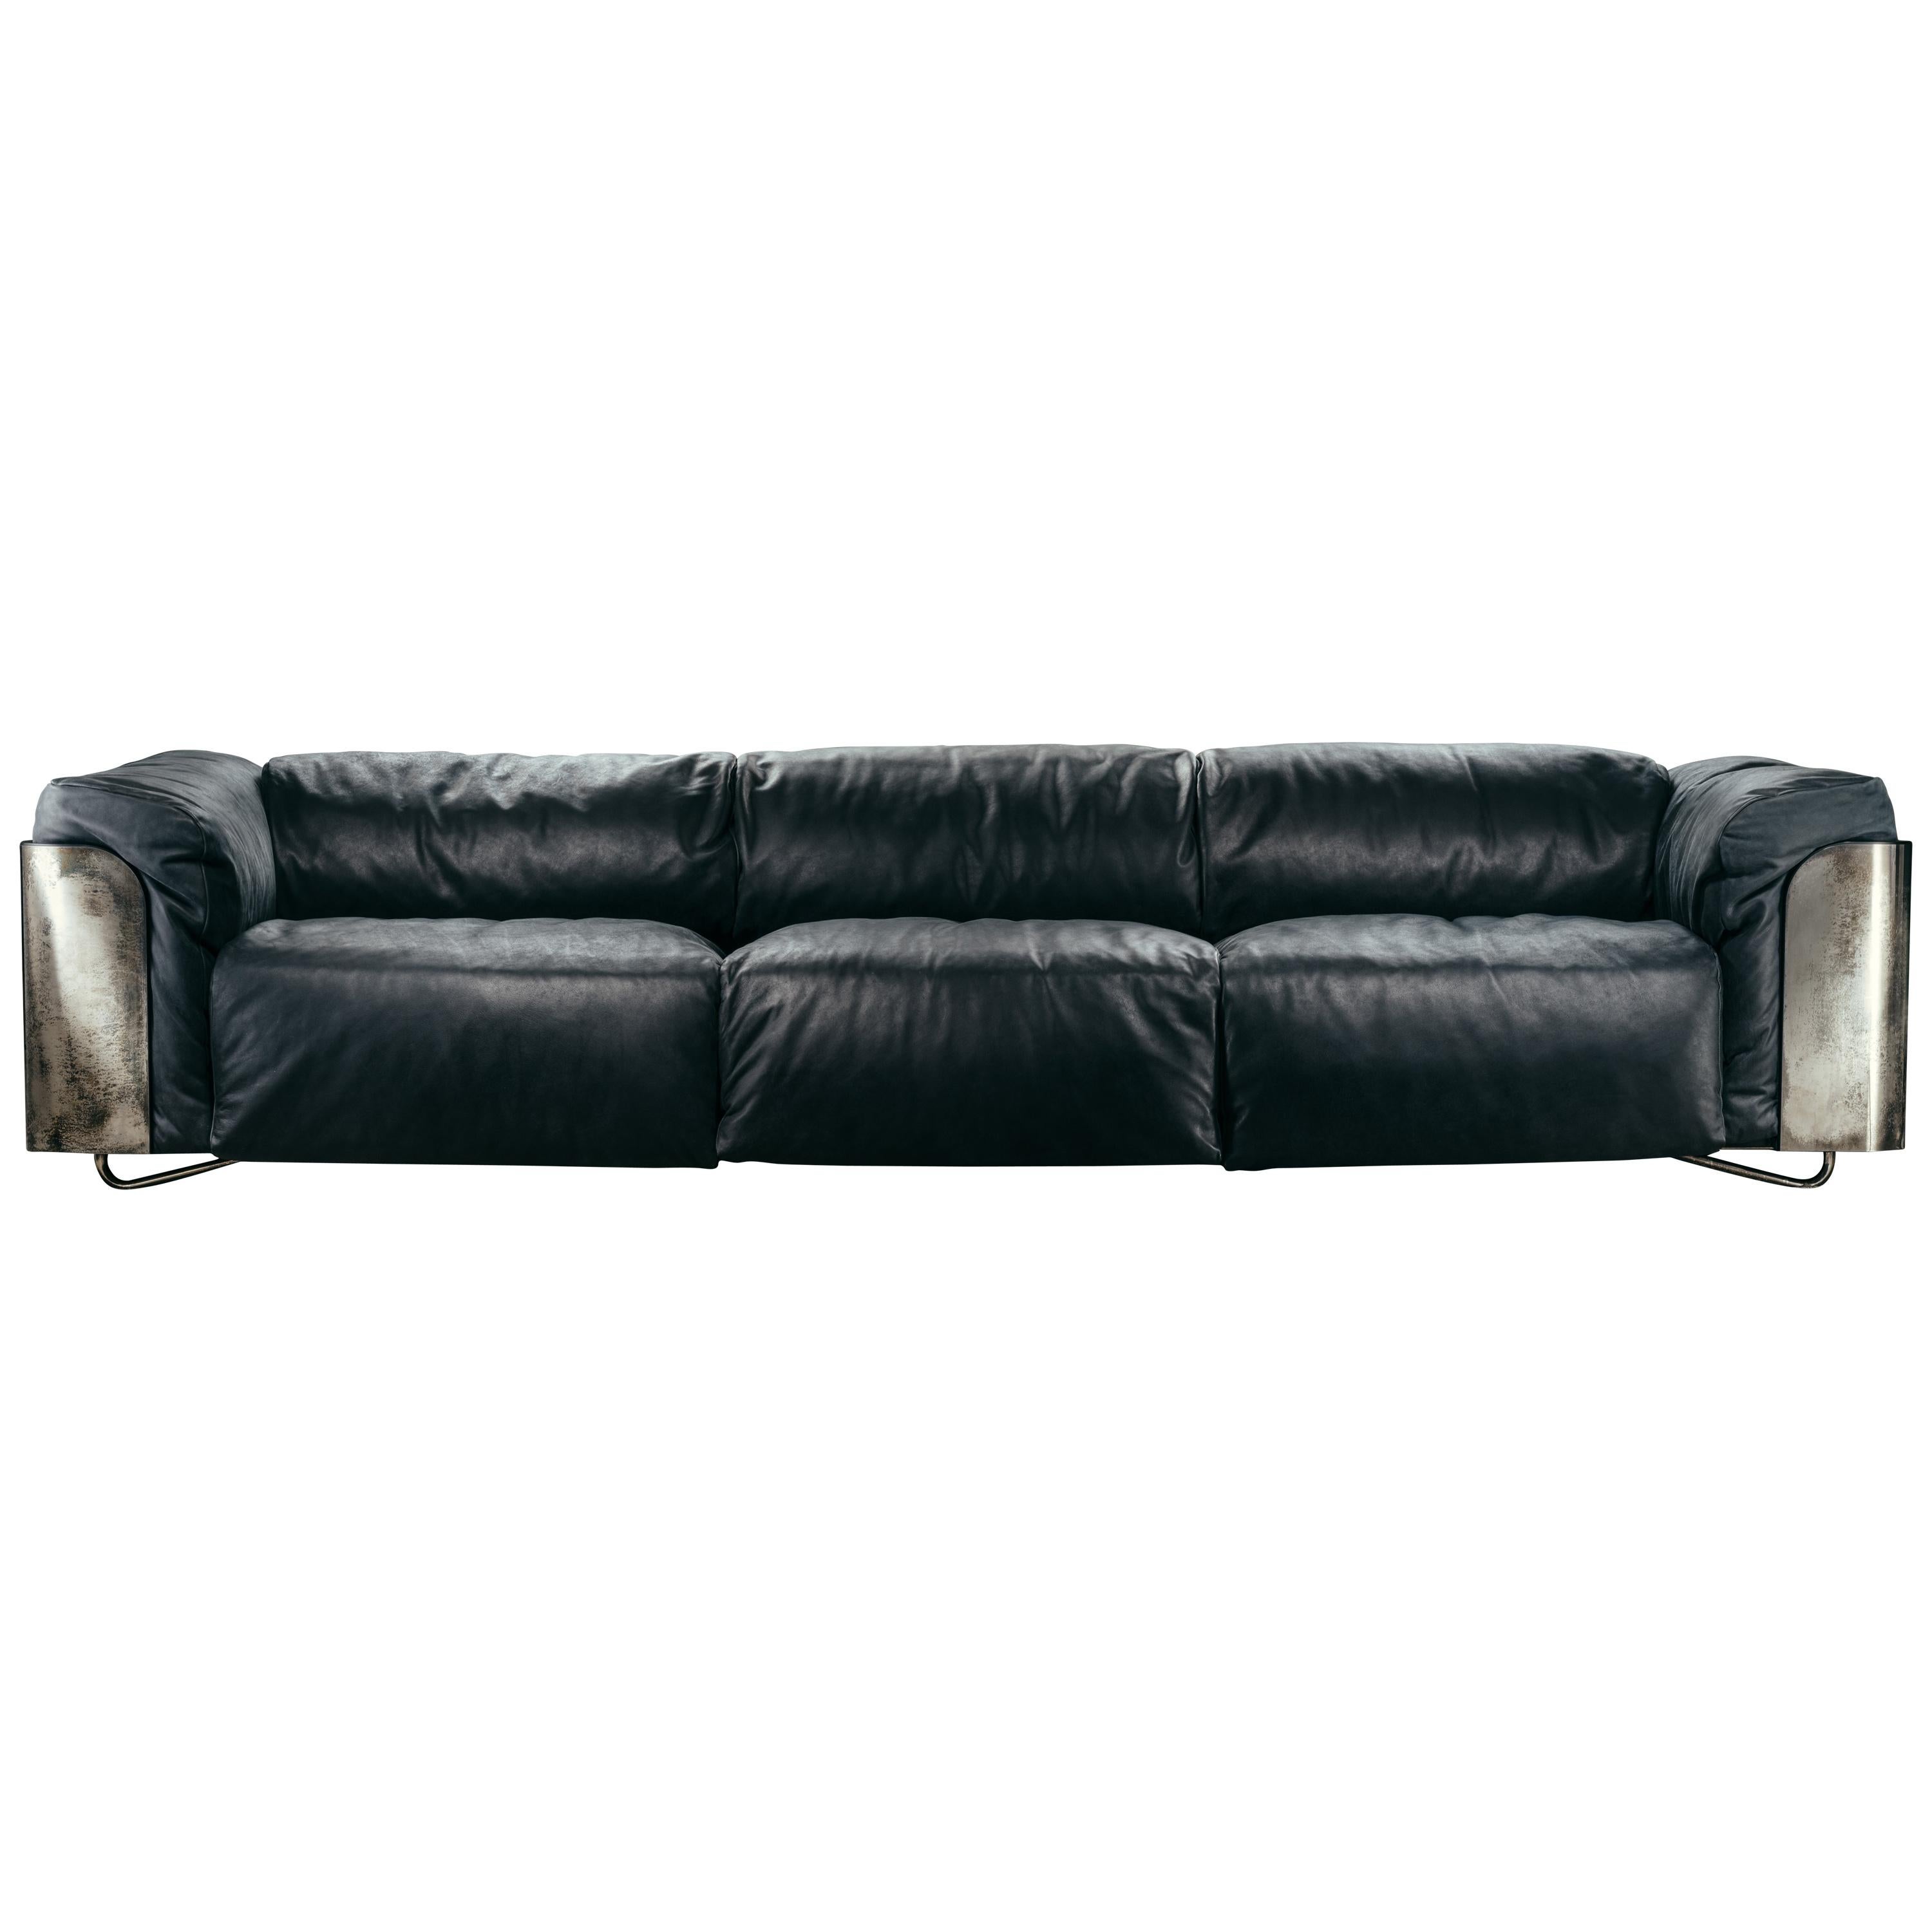 Saint-Germain 3-Sitzer-Sofa aus schwarzem Timeless-Leder und Raw Silver